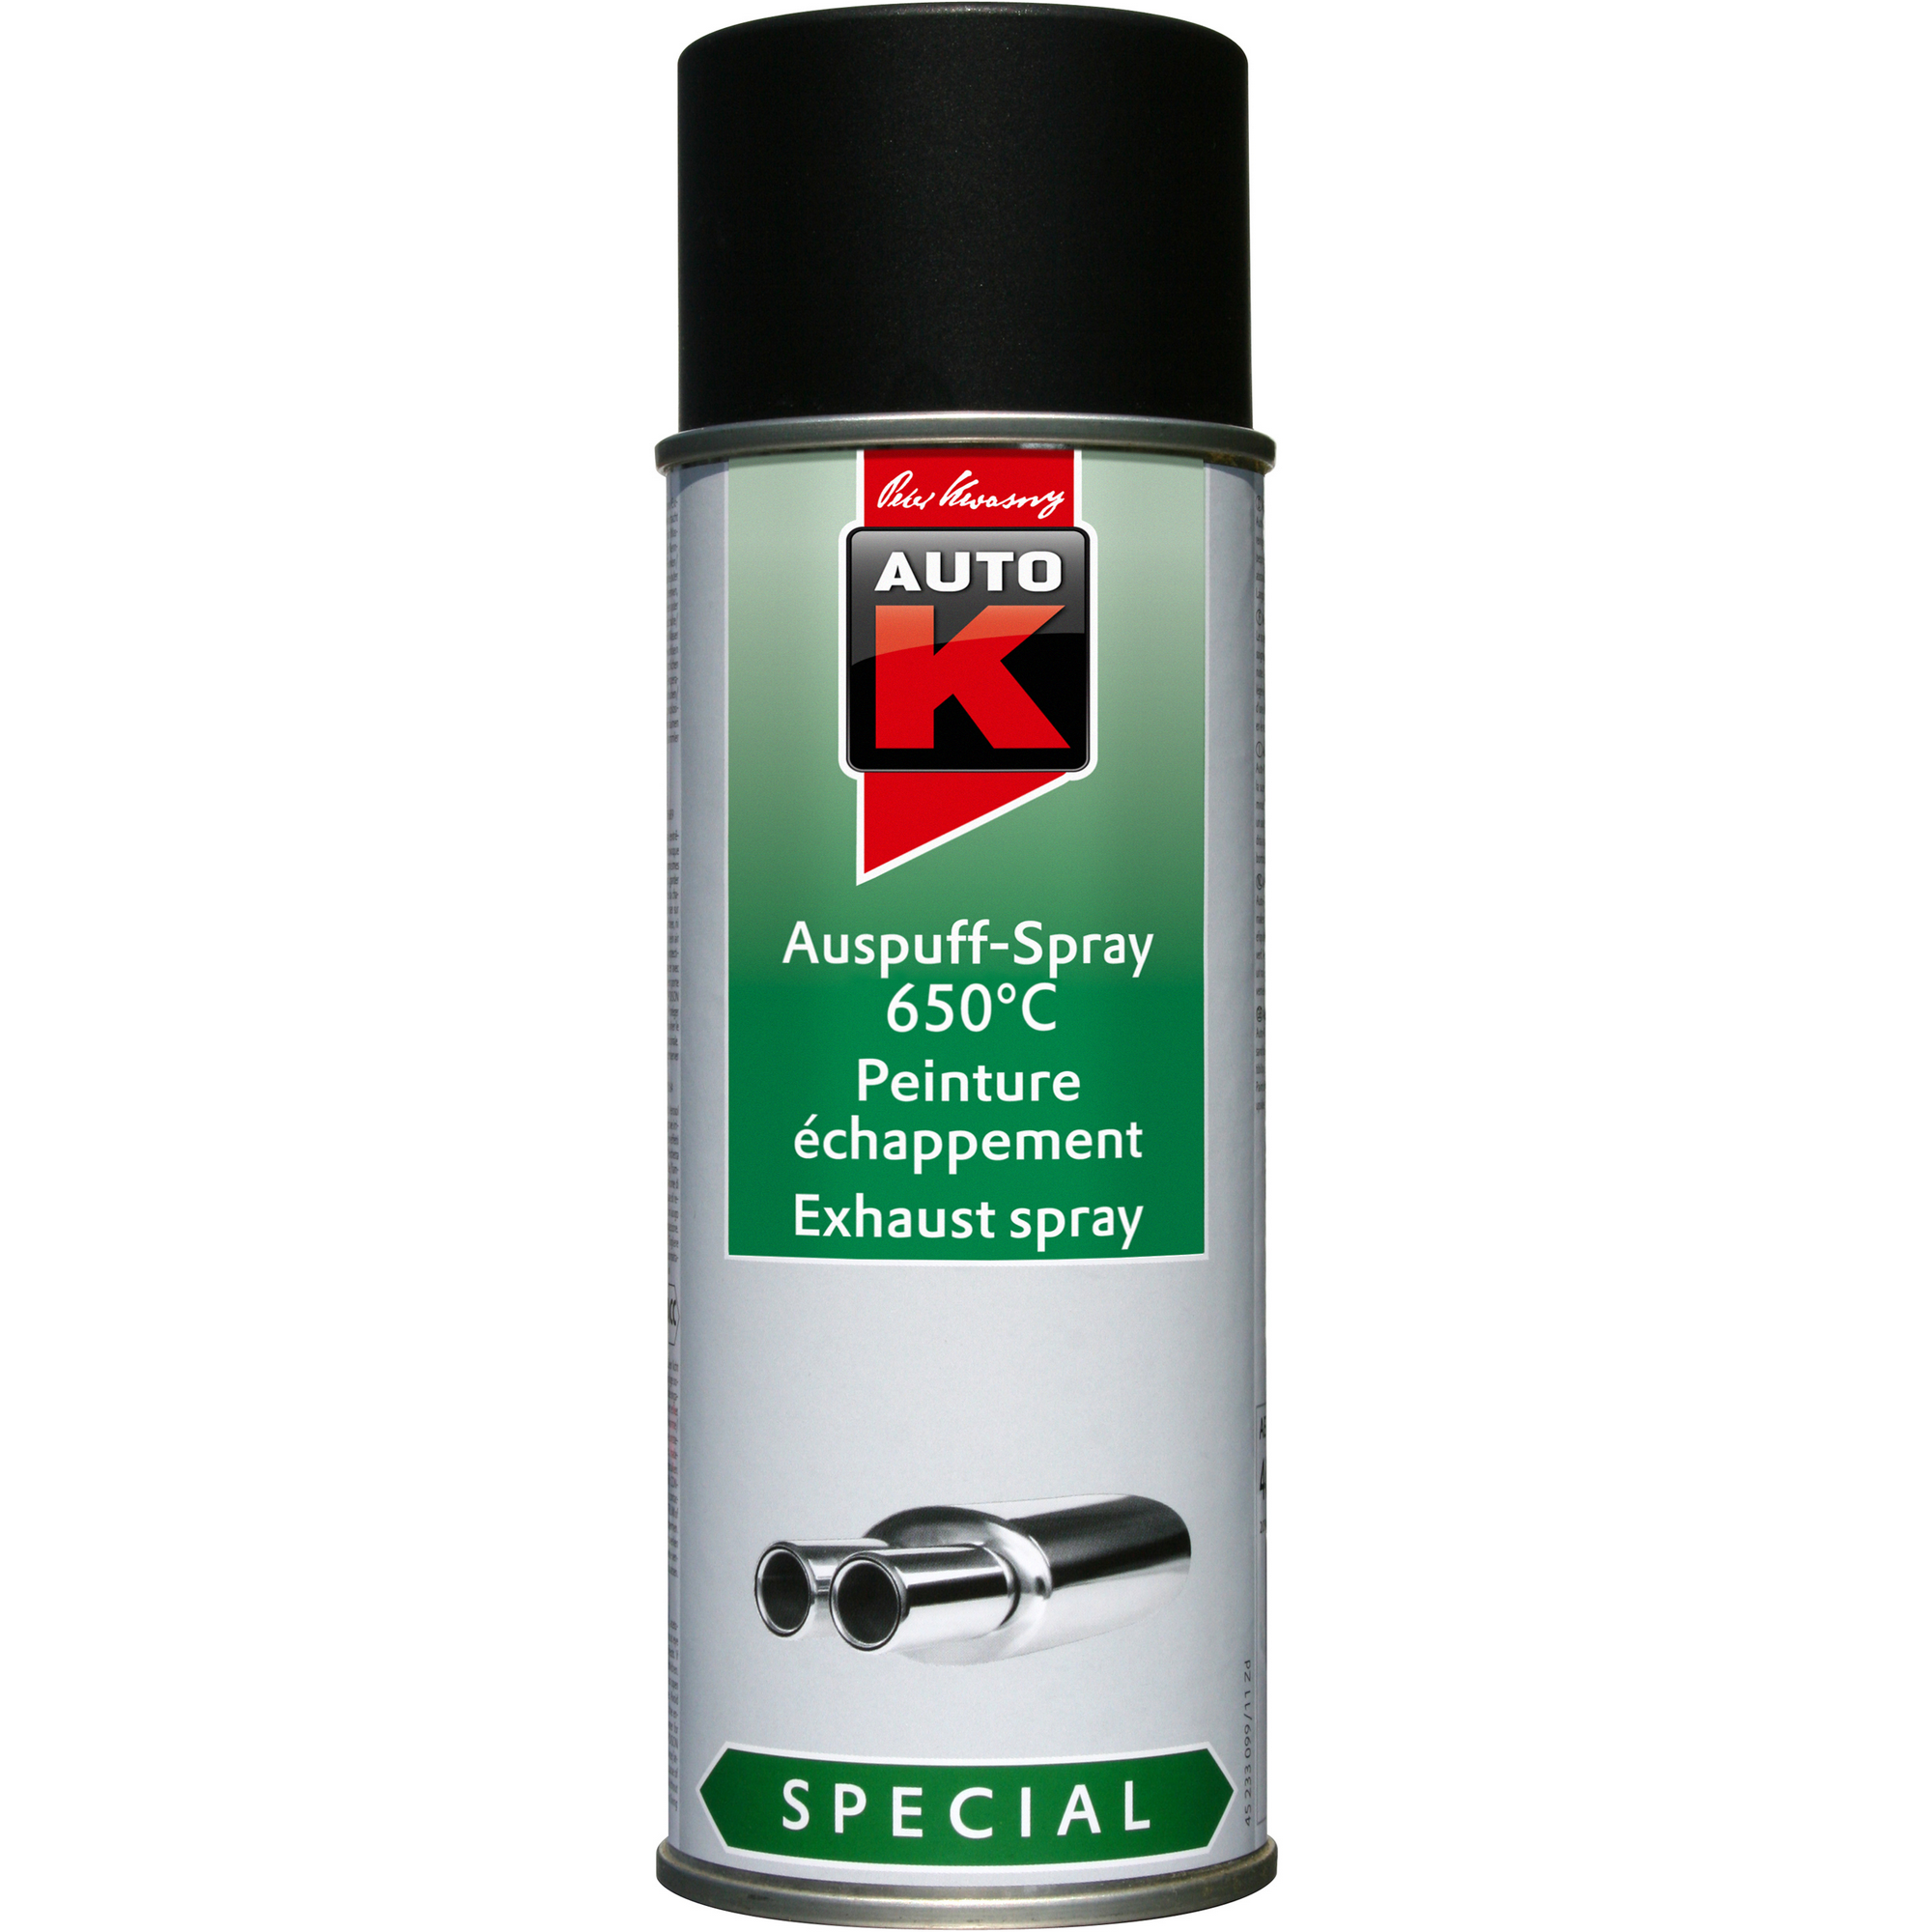 Auto-K Auspuff-Spray schwarz 650°C 400 ml + product picture